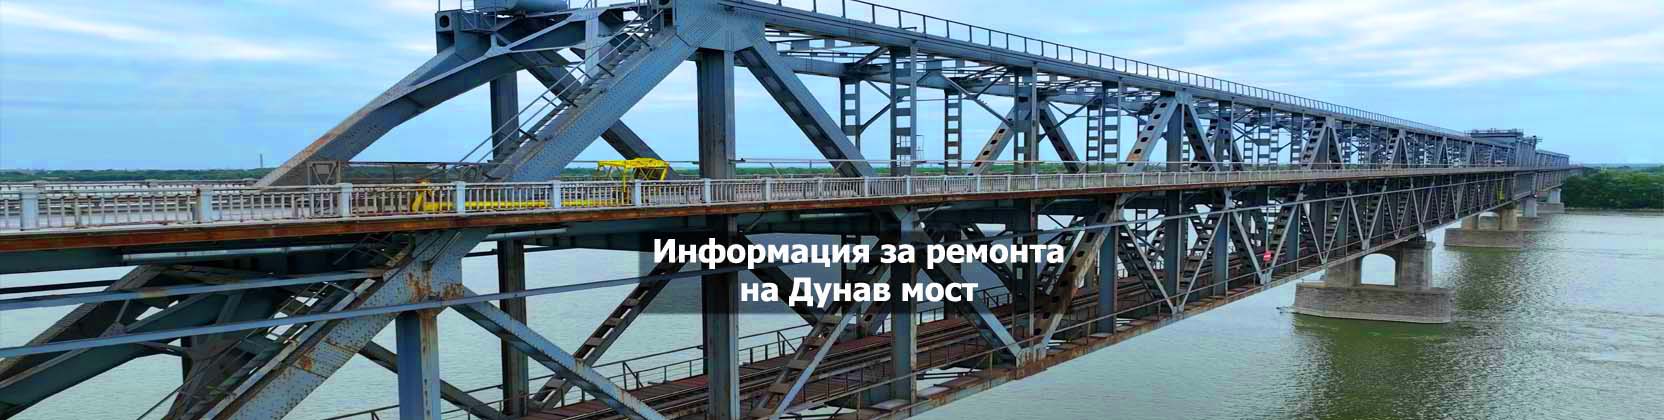 Информация за ремонта на Дунас мост